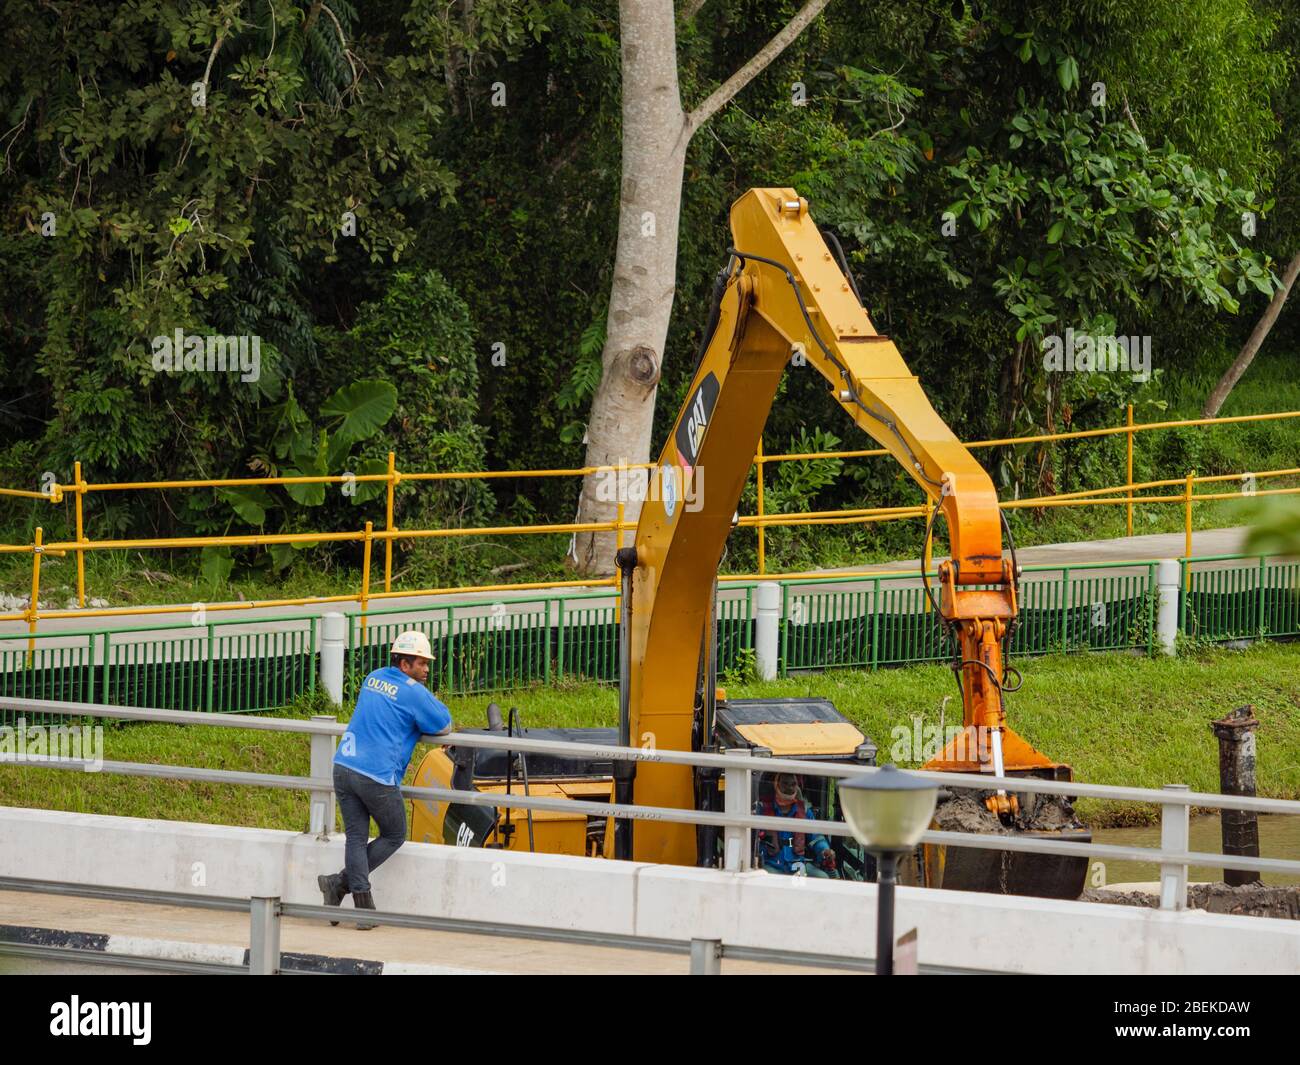 SINGAPUR – 21 FEB 2020 - ein indischer / bangladeschischer Bauarbeiter in Harthut beobachtet einen Bagger bei der Baggerarbeit in einem Naturpark Stockfoto